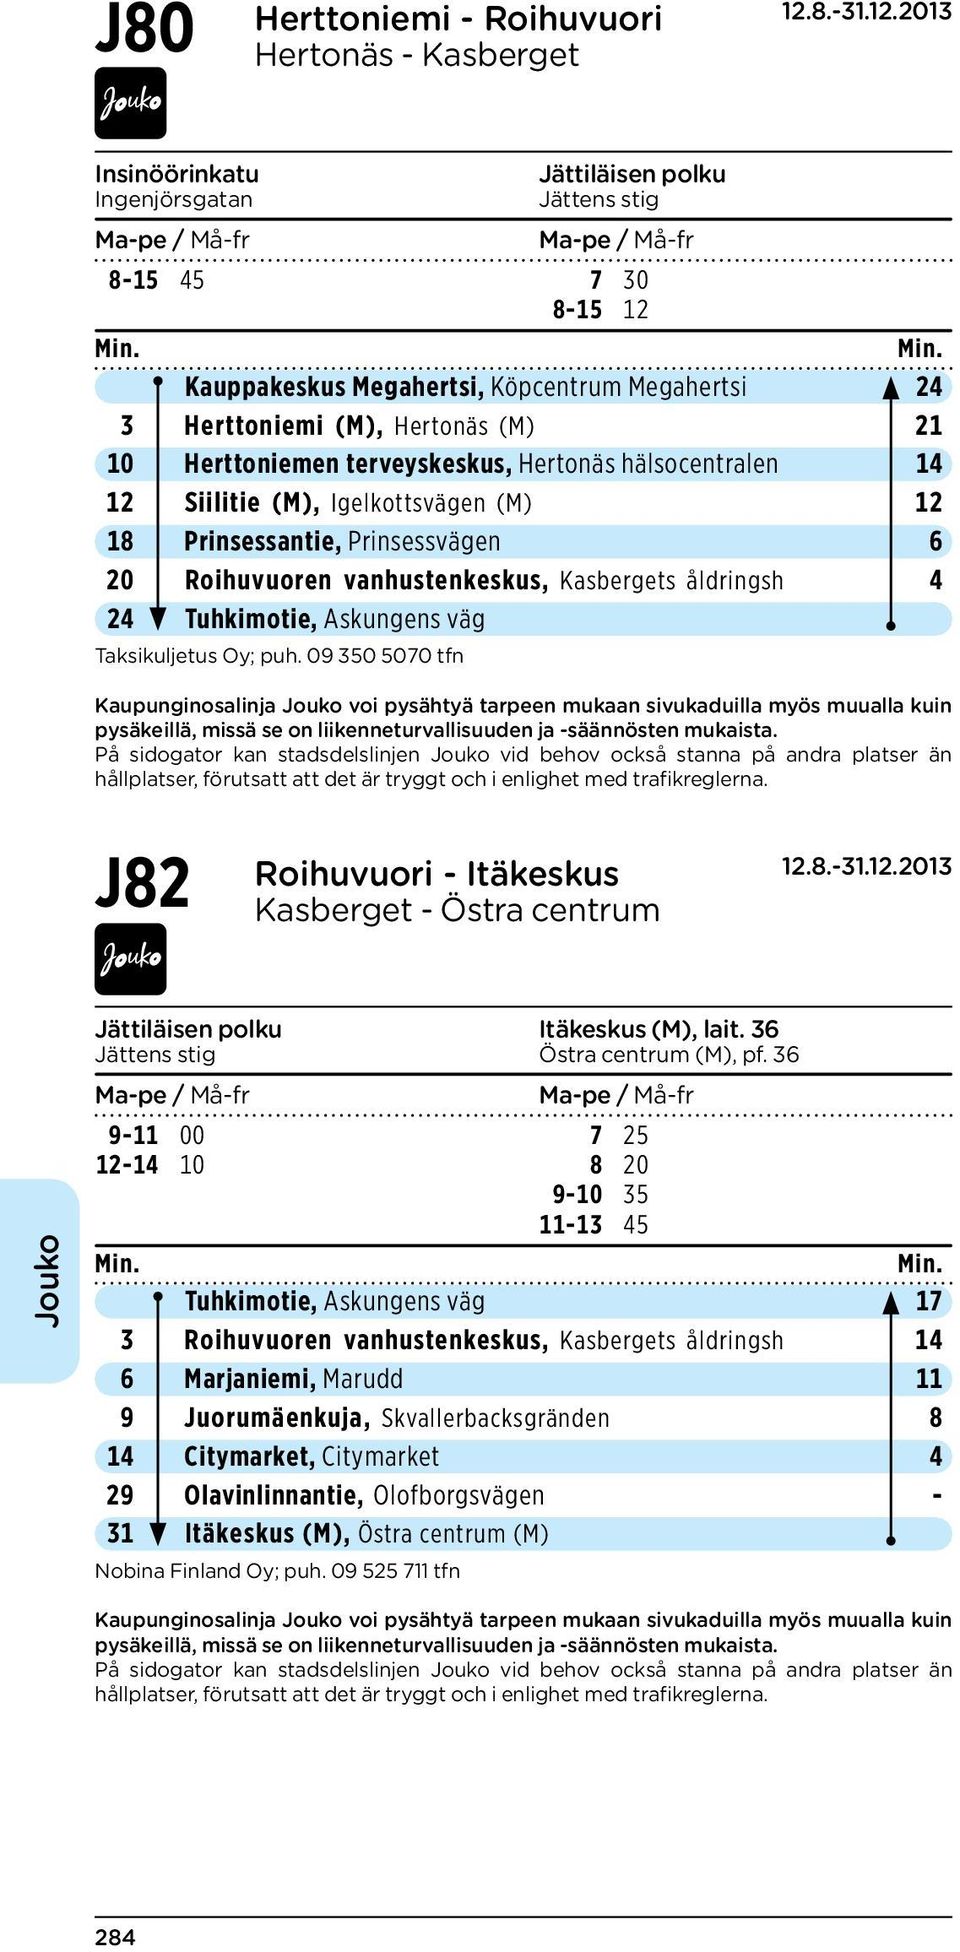 åldringsh 4 24 Tuhkimotie, Askungens väg J82 Roihuvuori - Itäkeskus Kasberget - Östra centrum Jättiläisen polku Itäkeskus (M), lait. 36 Jättens stig Östra centrum (M), pf.